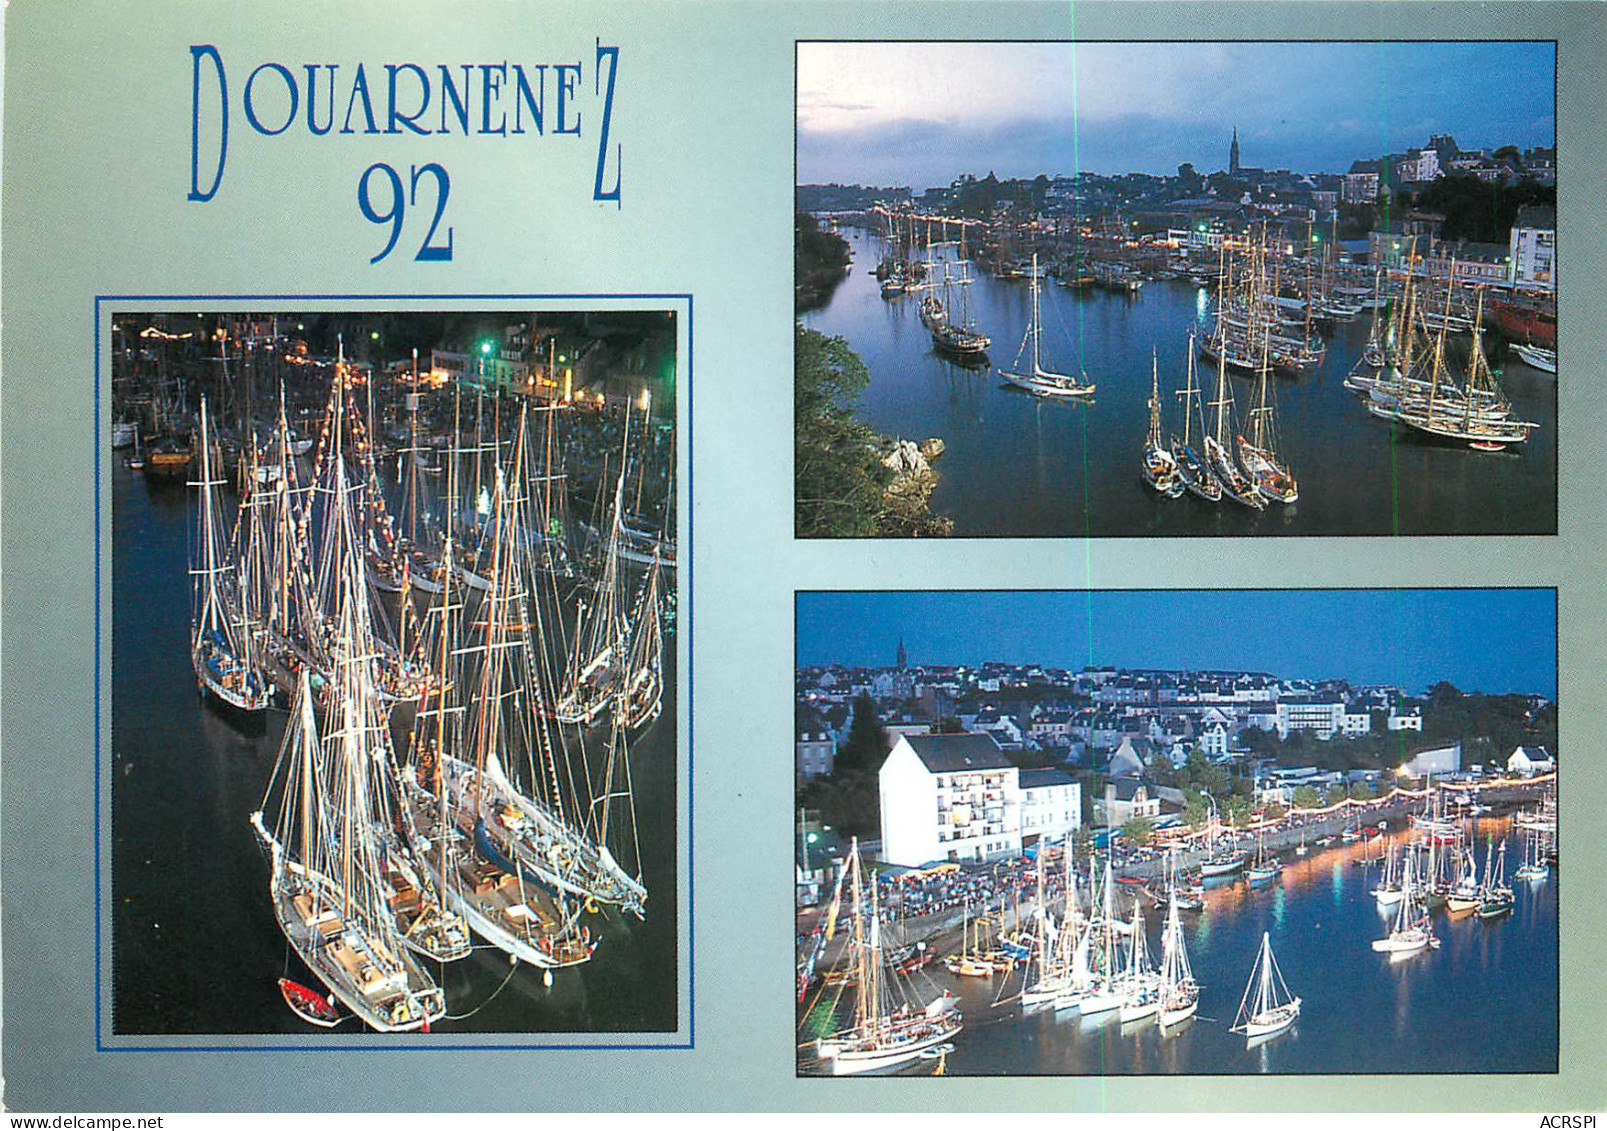 DOUARNENEZ La Fete De Nuit Au Port Rhu 3 (scan Recto Verso)MF2725 - Douarnenez